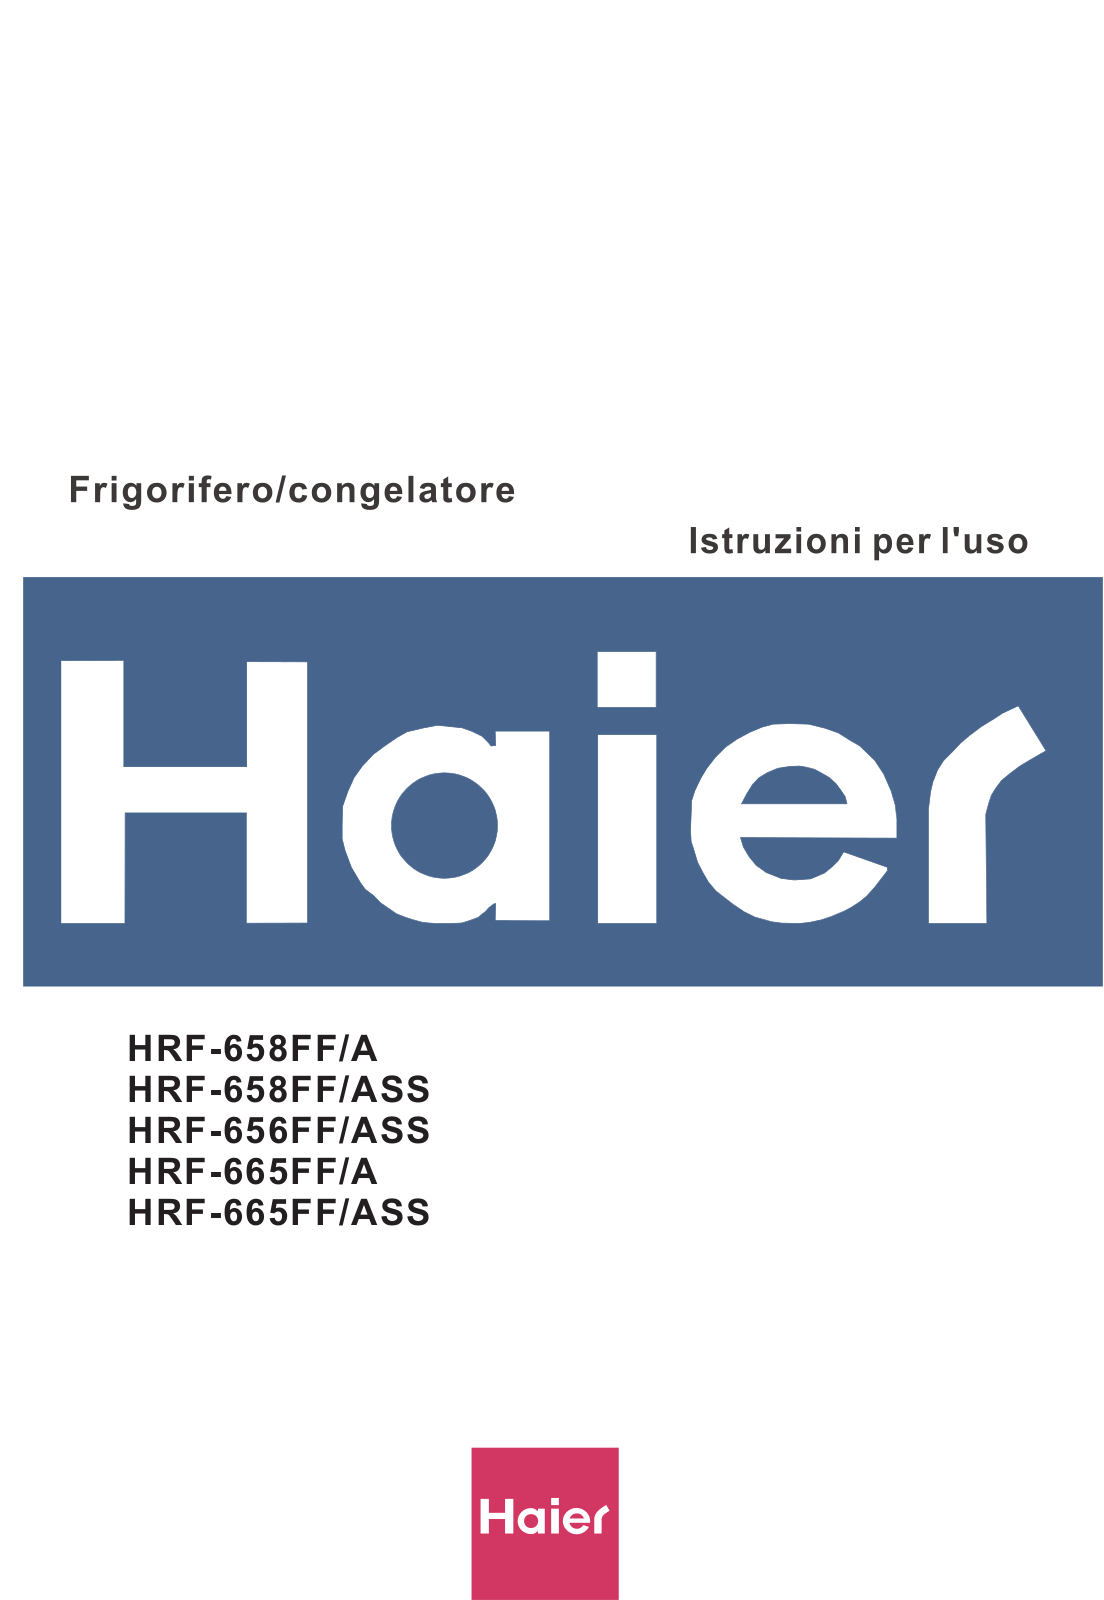 Haier HRF-658FF/A, HRF-658FF/ASS, HRF-656FF/ASS, HRF-665FF/A, HRF-665FF/ASS User Manual